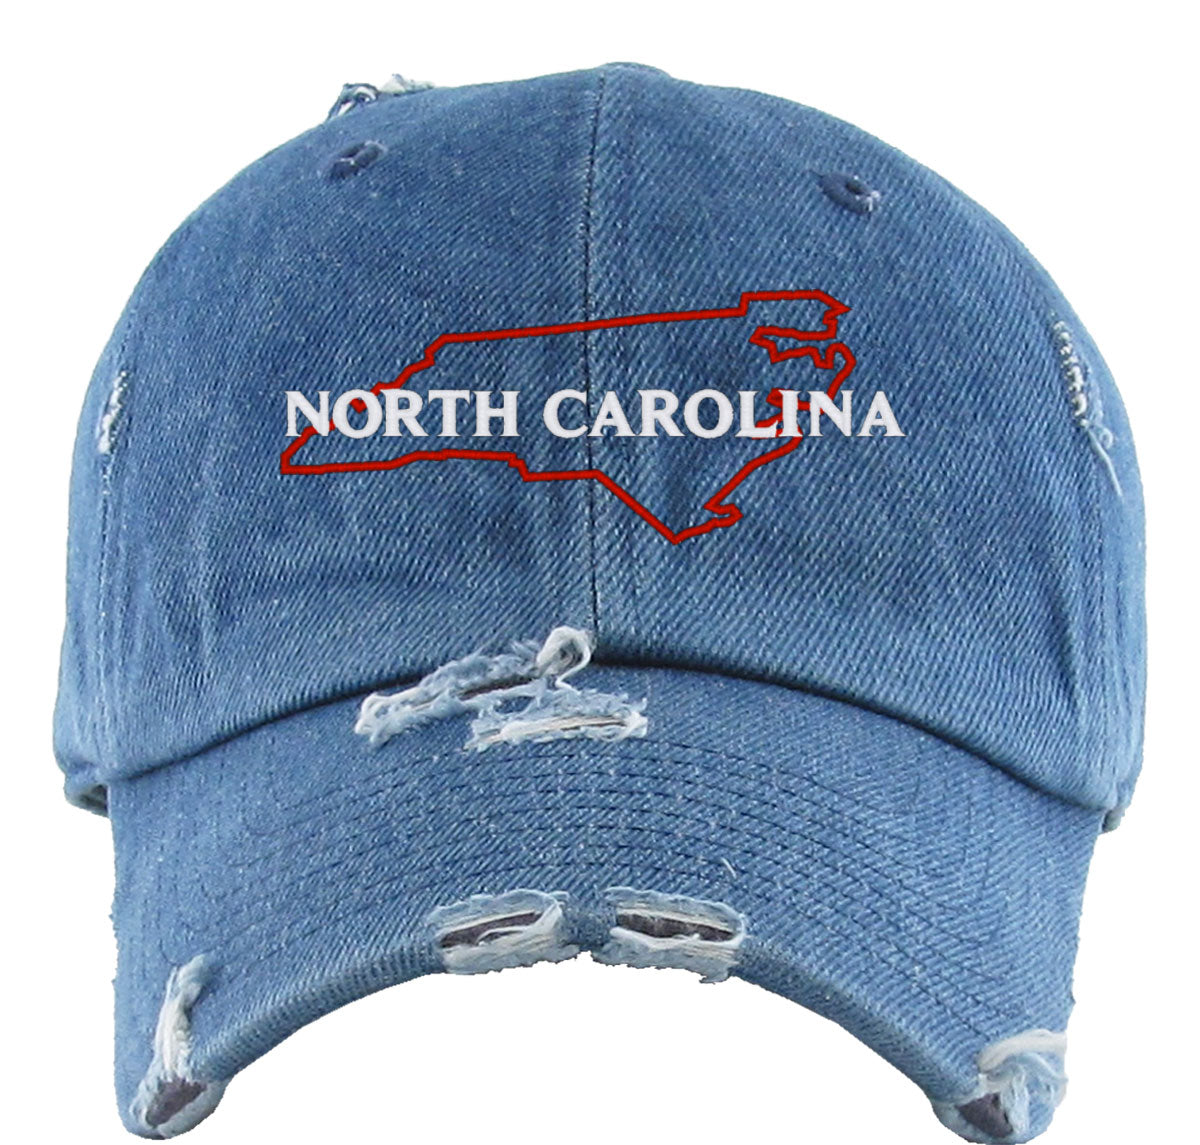 North Carolina Vintage Baseball Cap